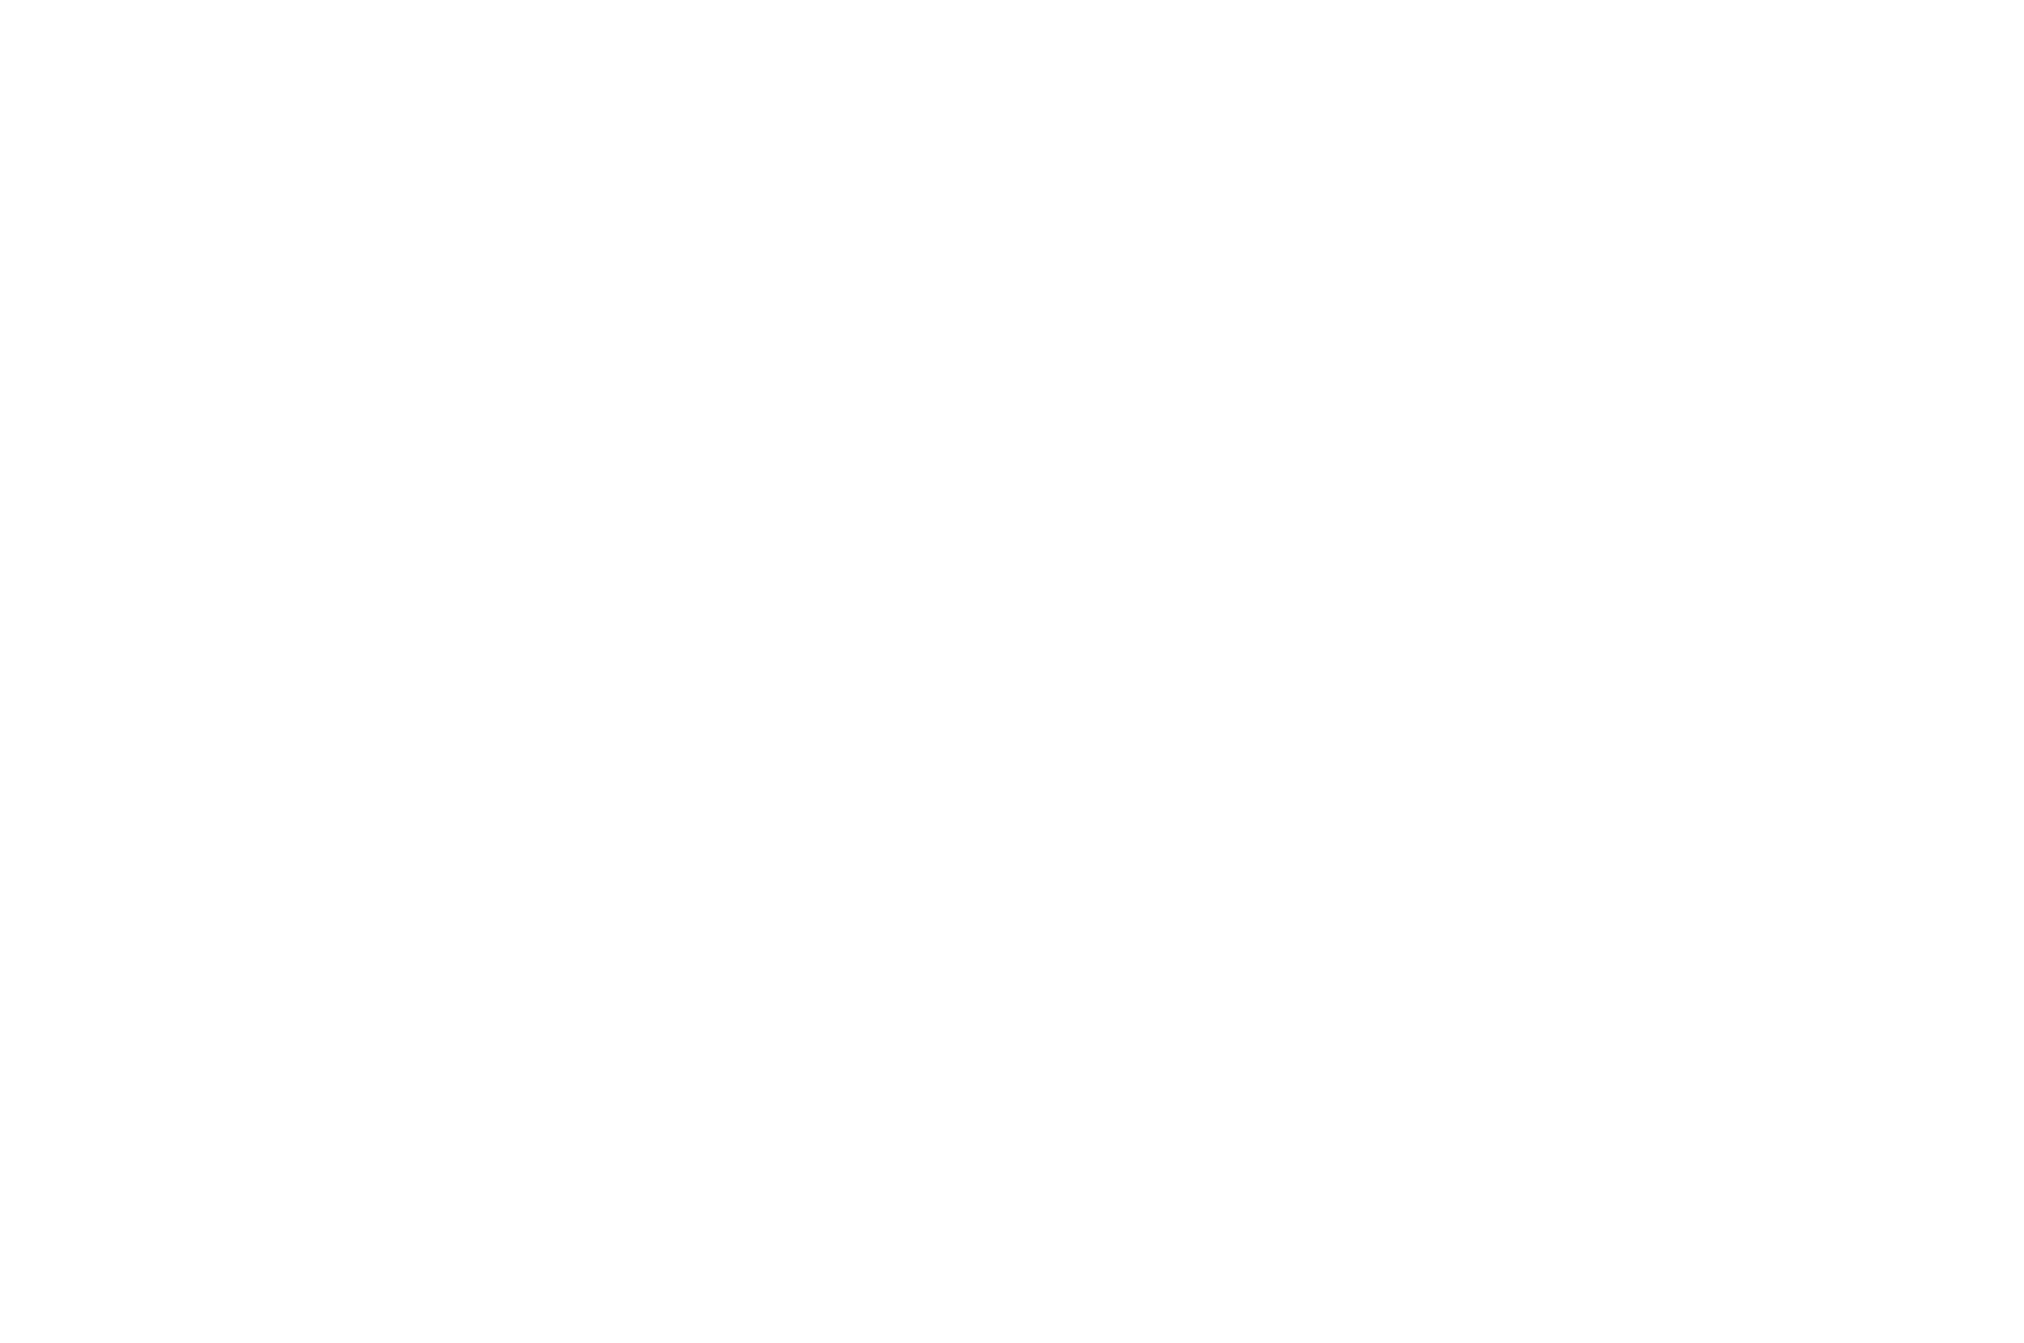 Future Brand